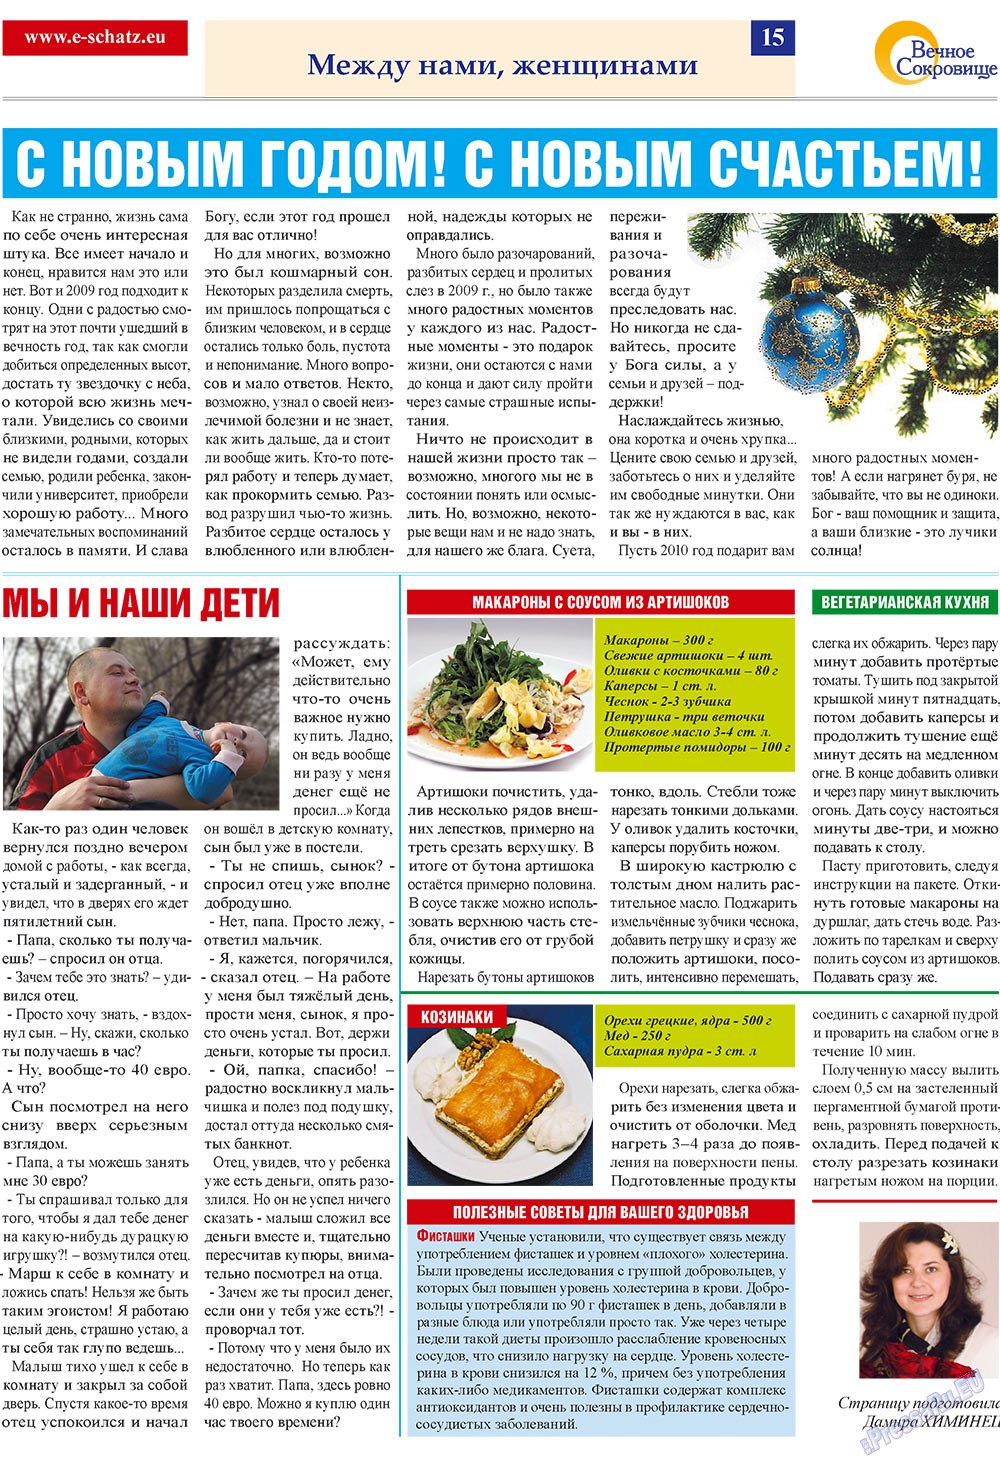 Вечное сокровище, газета. 2009 №4 стр.15